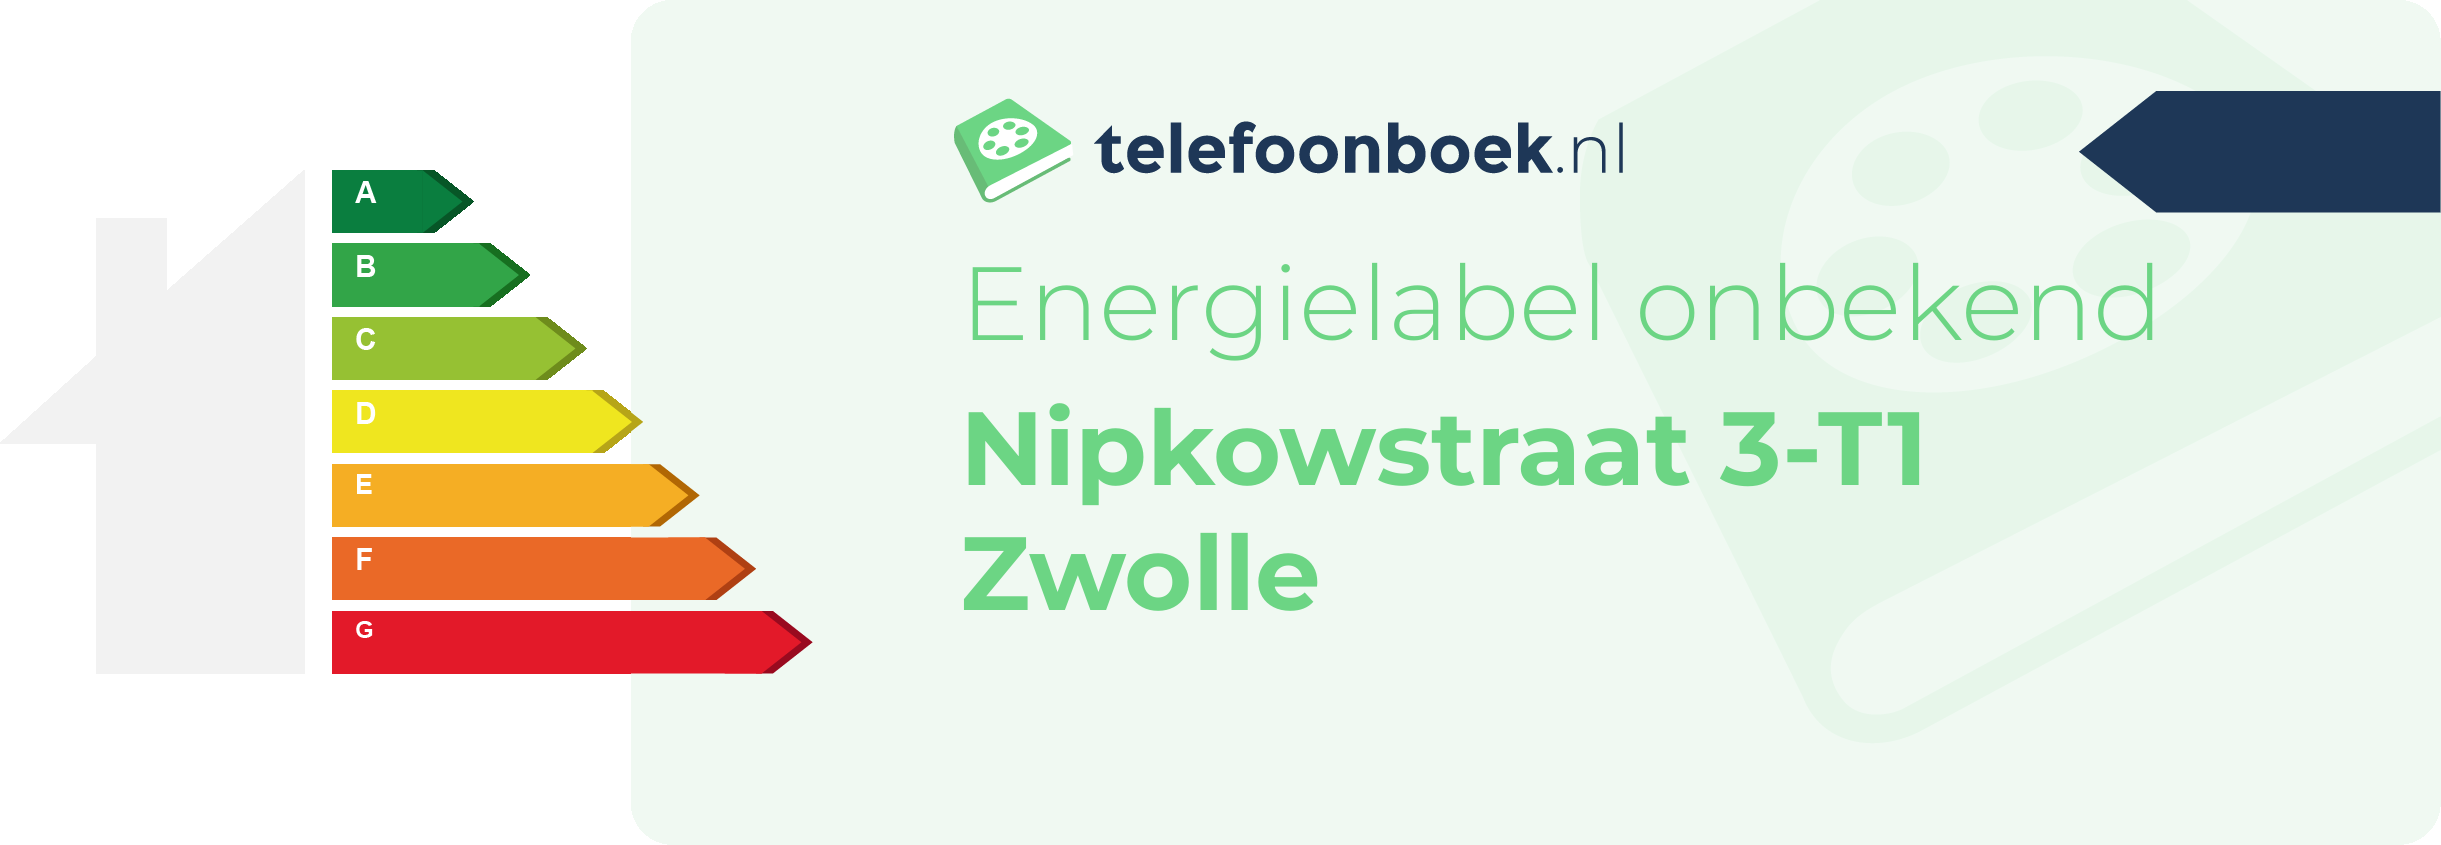 Energielabel Nipkowstraat 3-T1 Zwolle